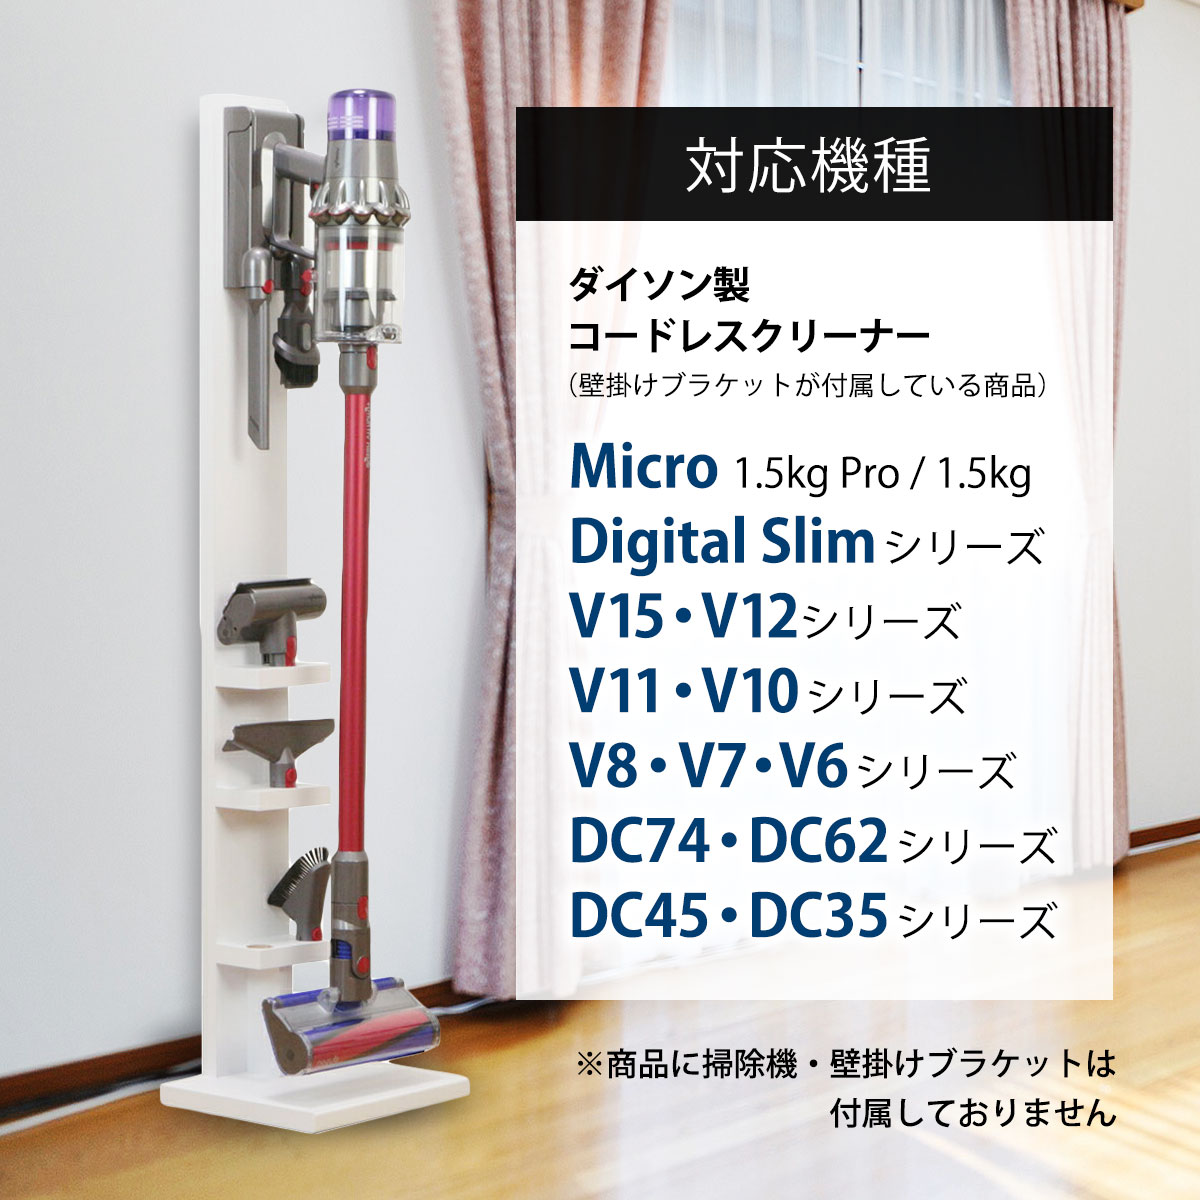 新品入荷 ダイソン 1.5kg スタンド dyson micro SV18FF Digital Slim 対応 スチール ダイソン掃除機スタン 